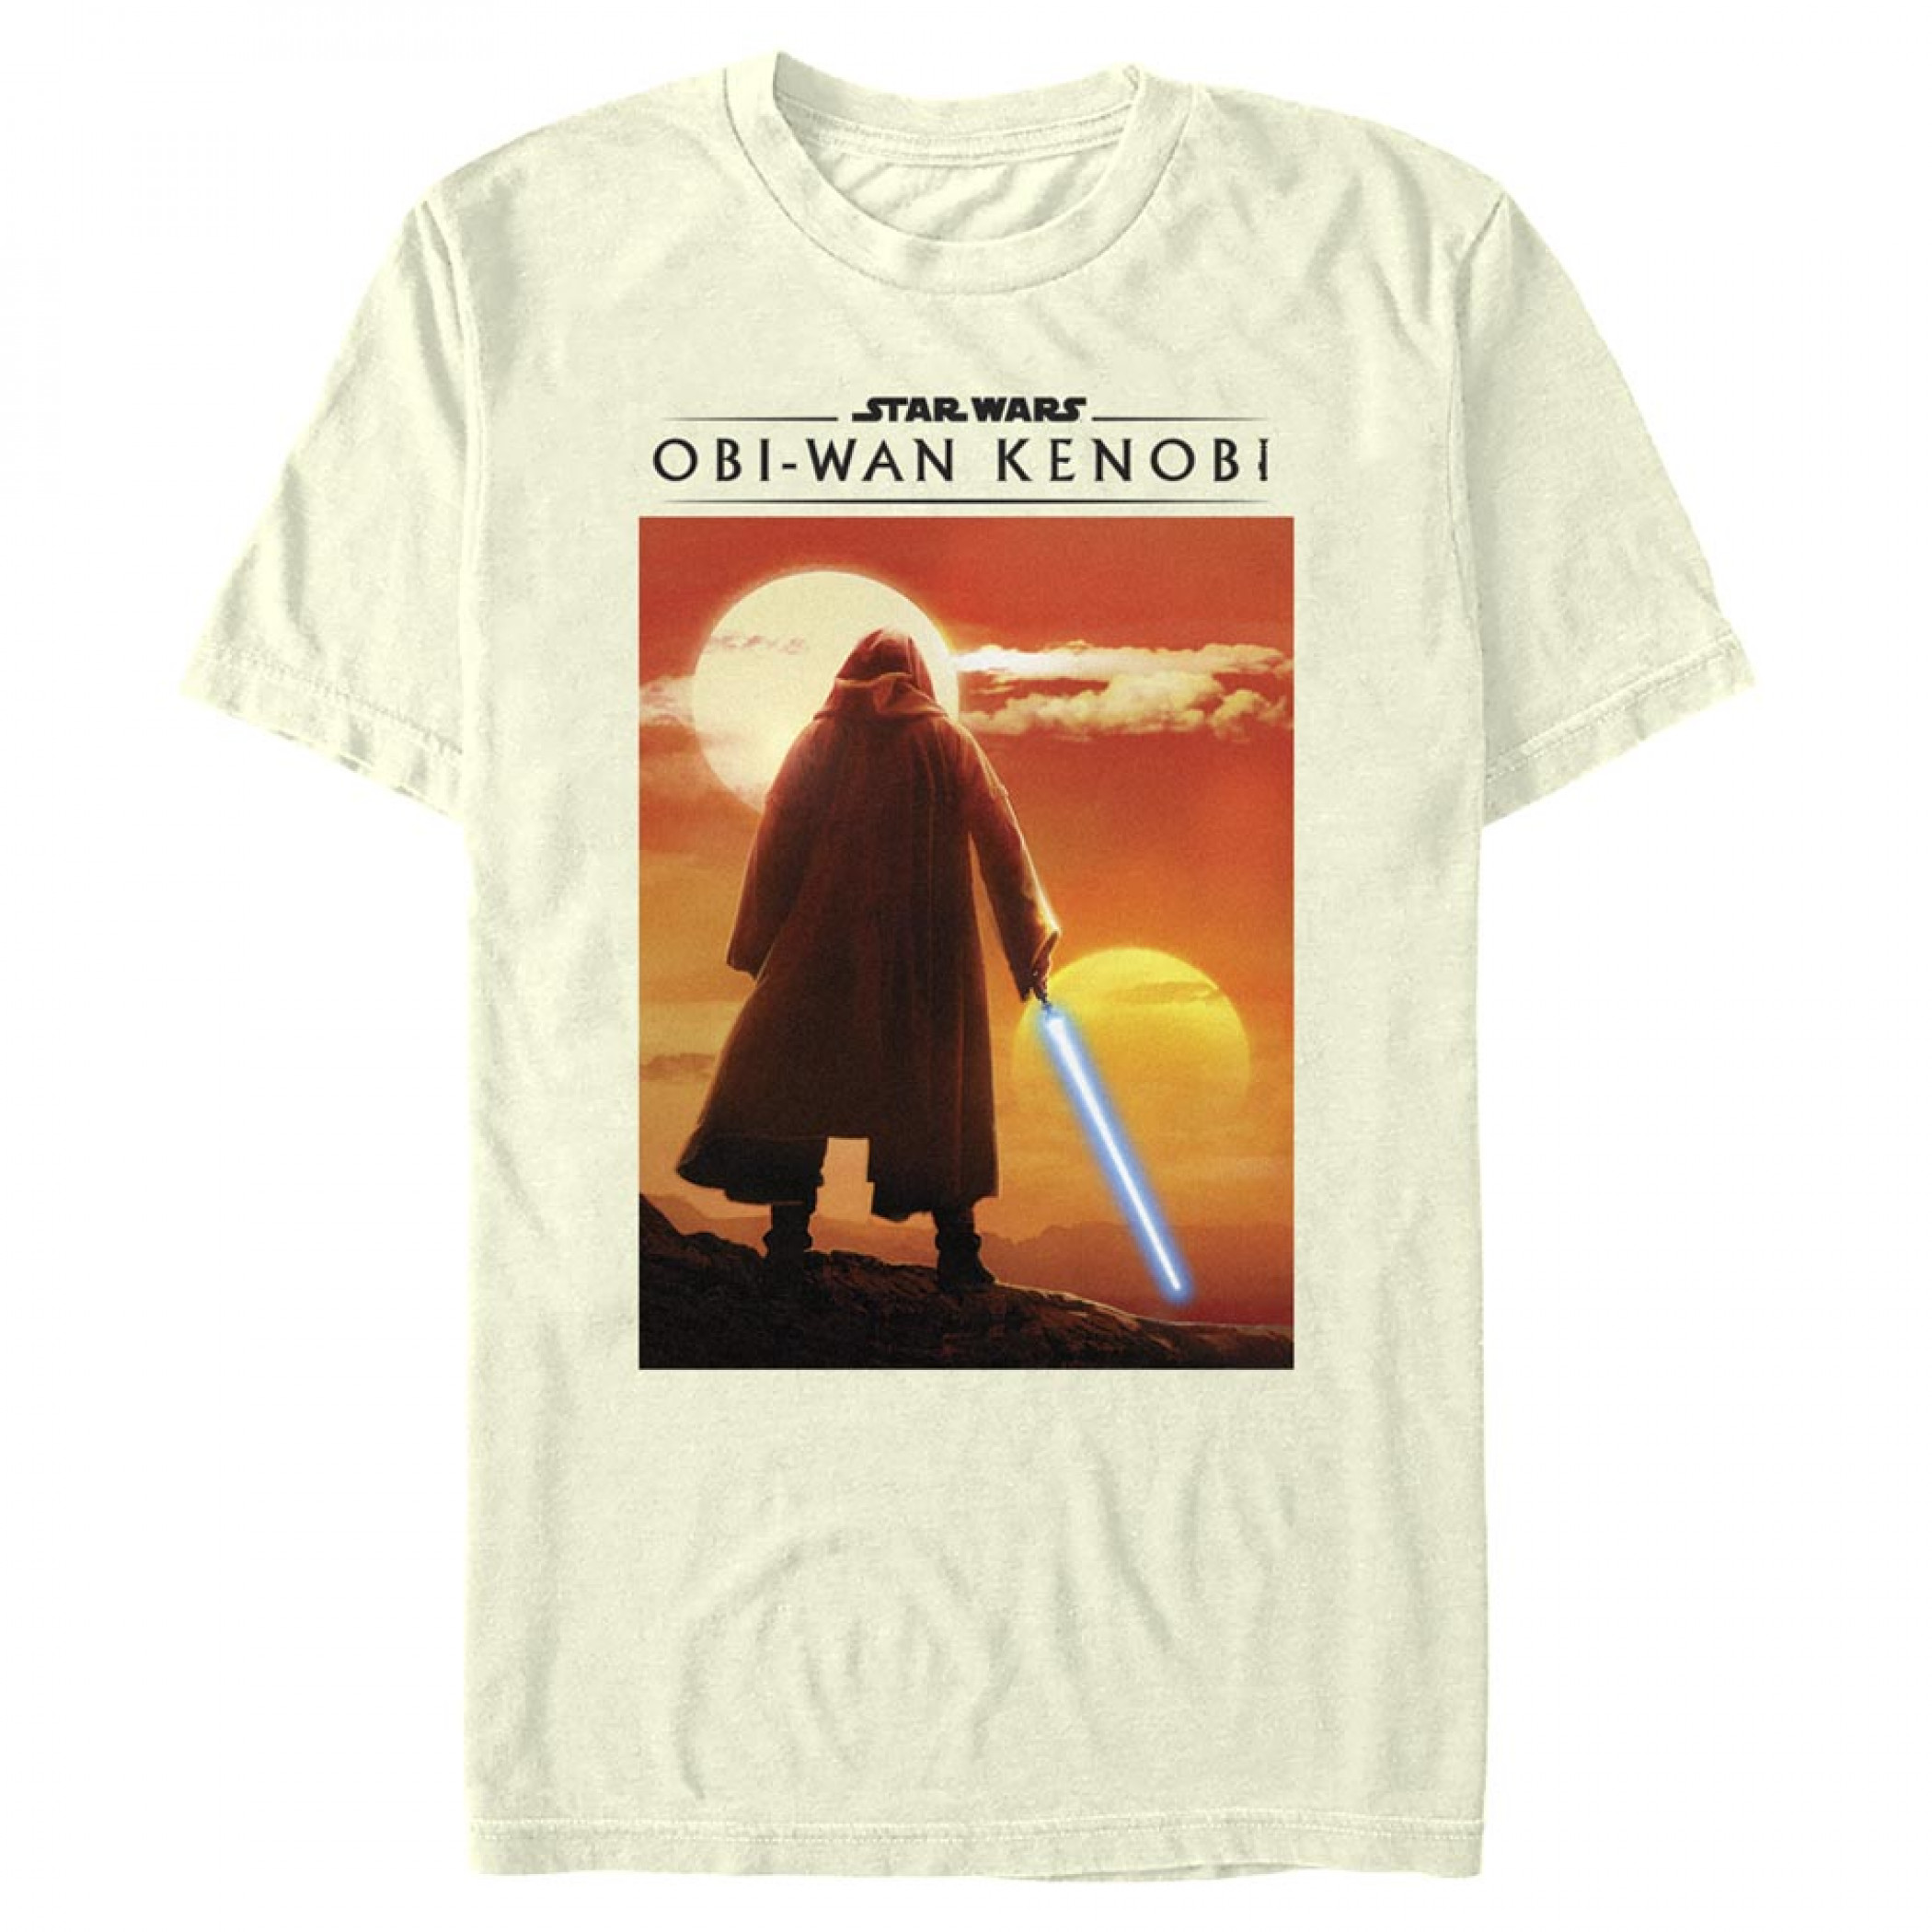 Star Wars Obi-Wan Kenobi Tatooine Dual Sunset T-Shirt